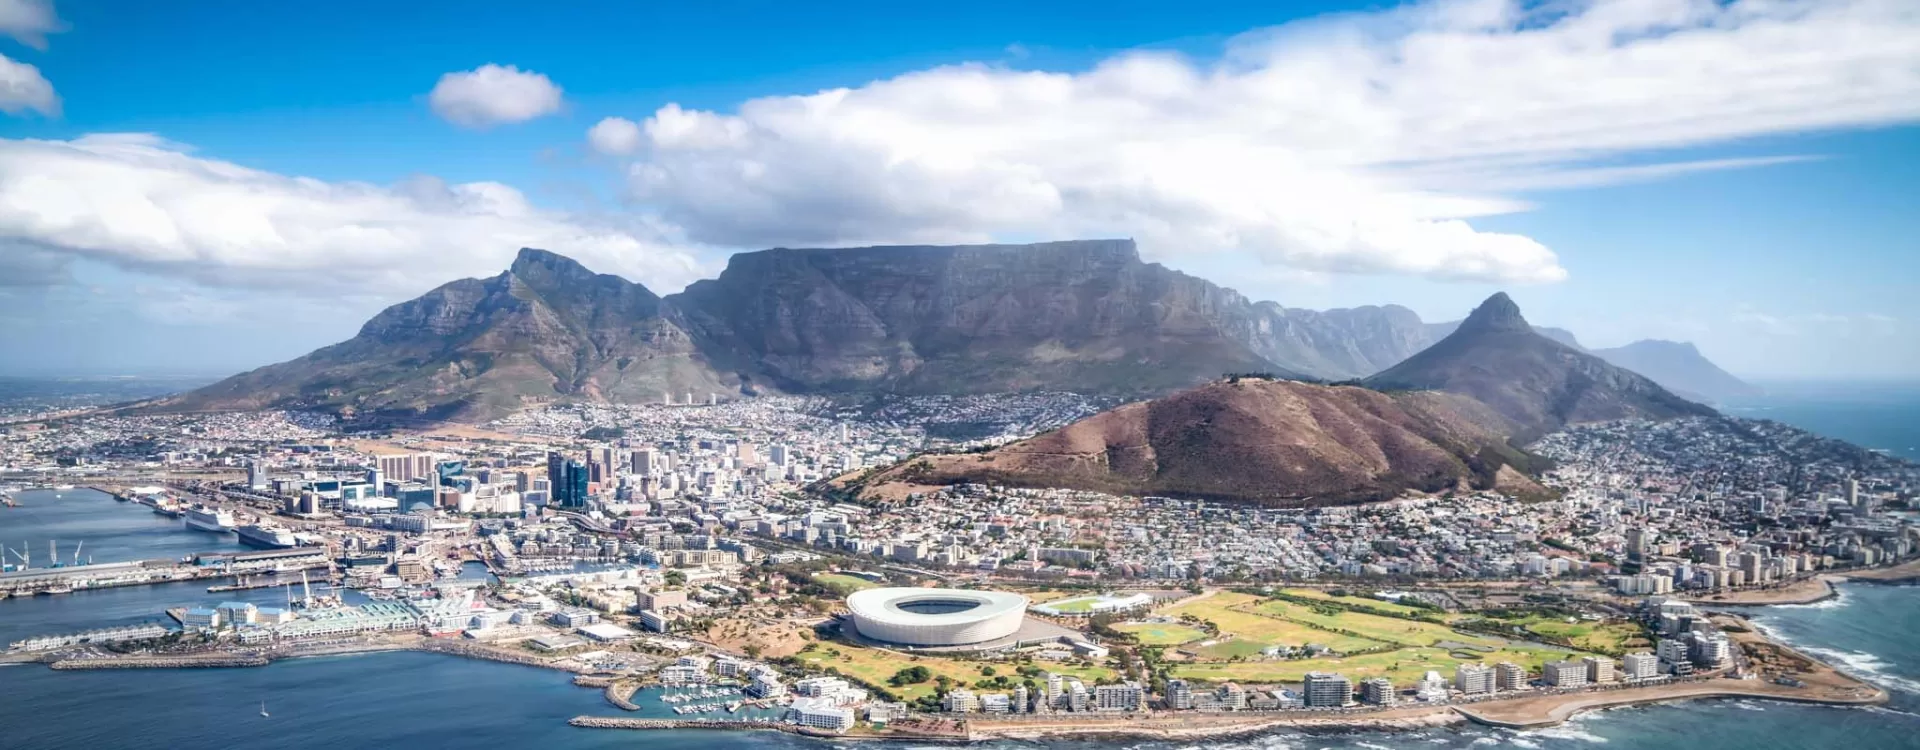 Cape Town Historical Landscapes